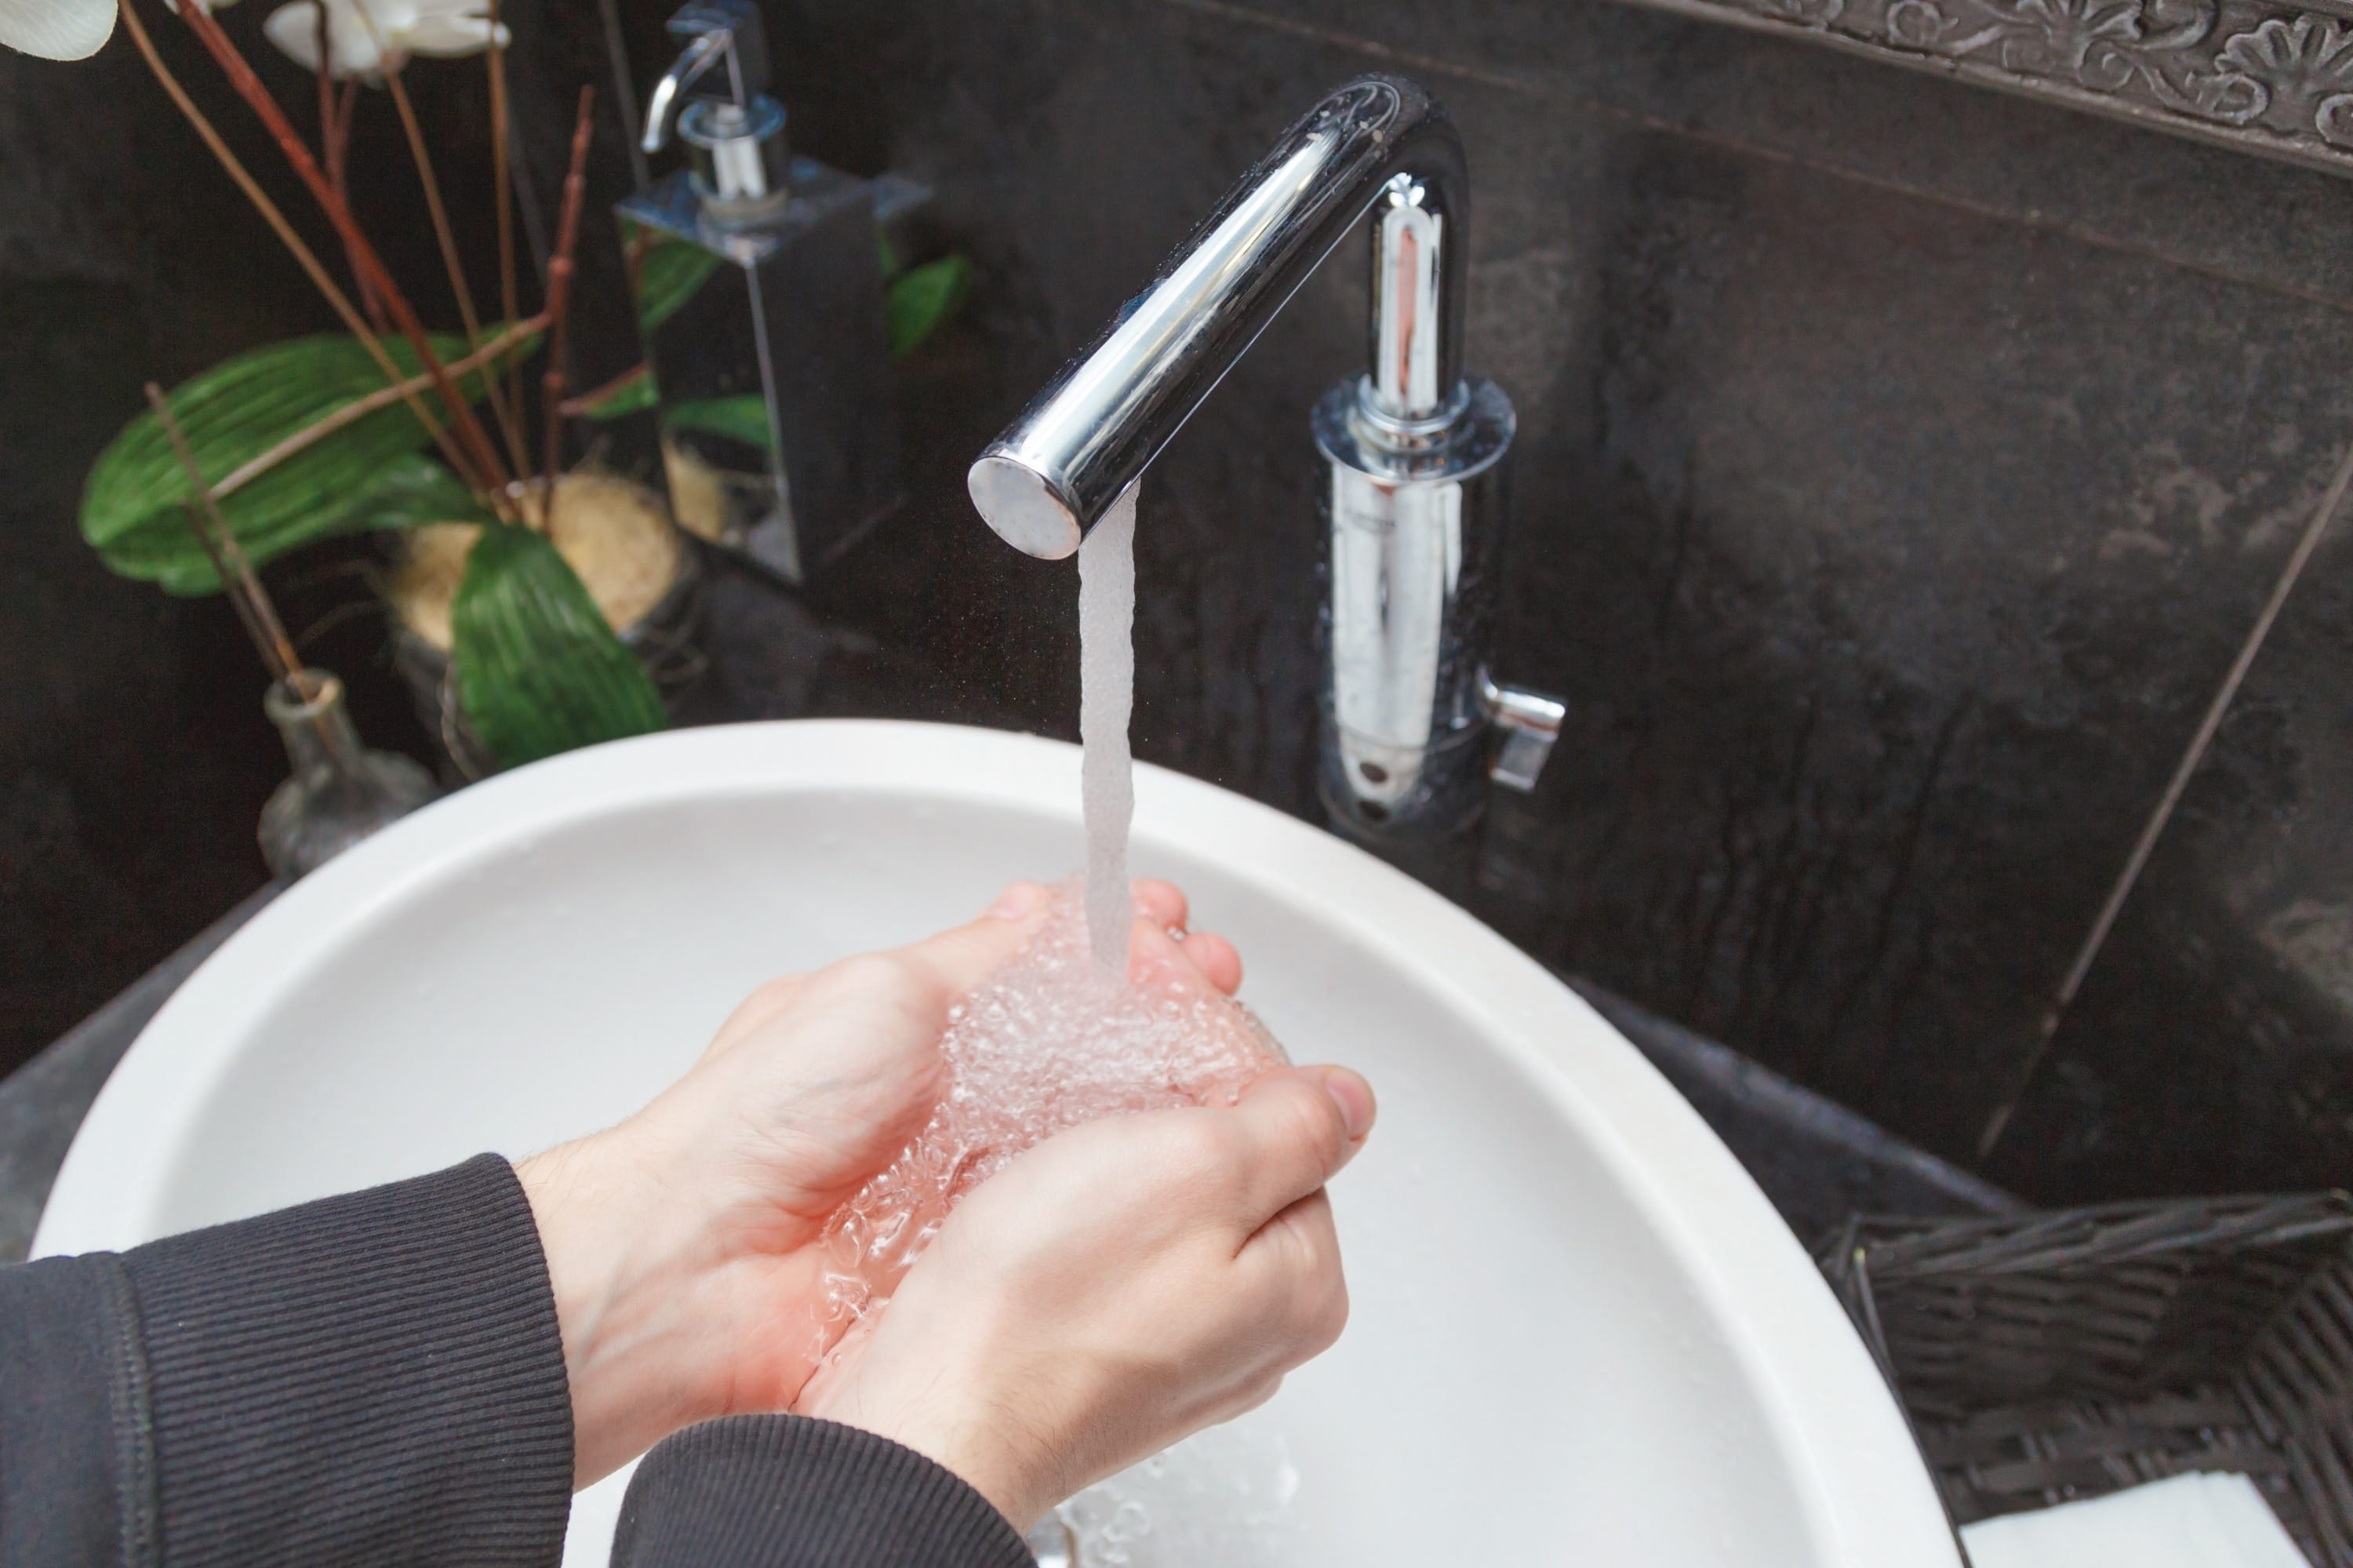 Поток вода кран. Мытье рук водой. Мытье рук под краном. Руки под краном с водой. Кран с водой.